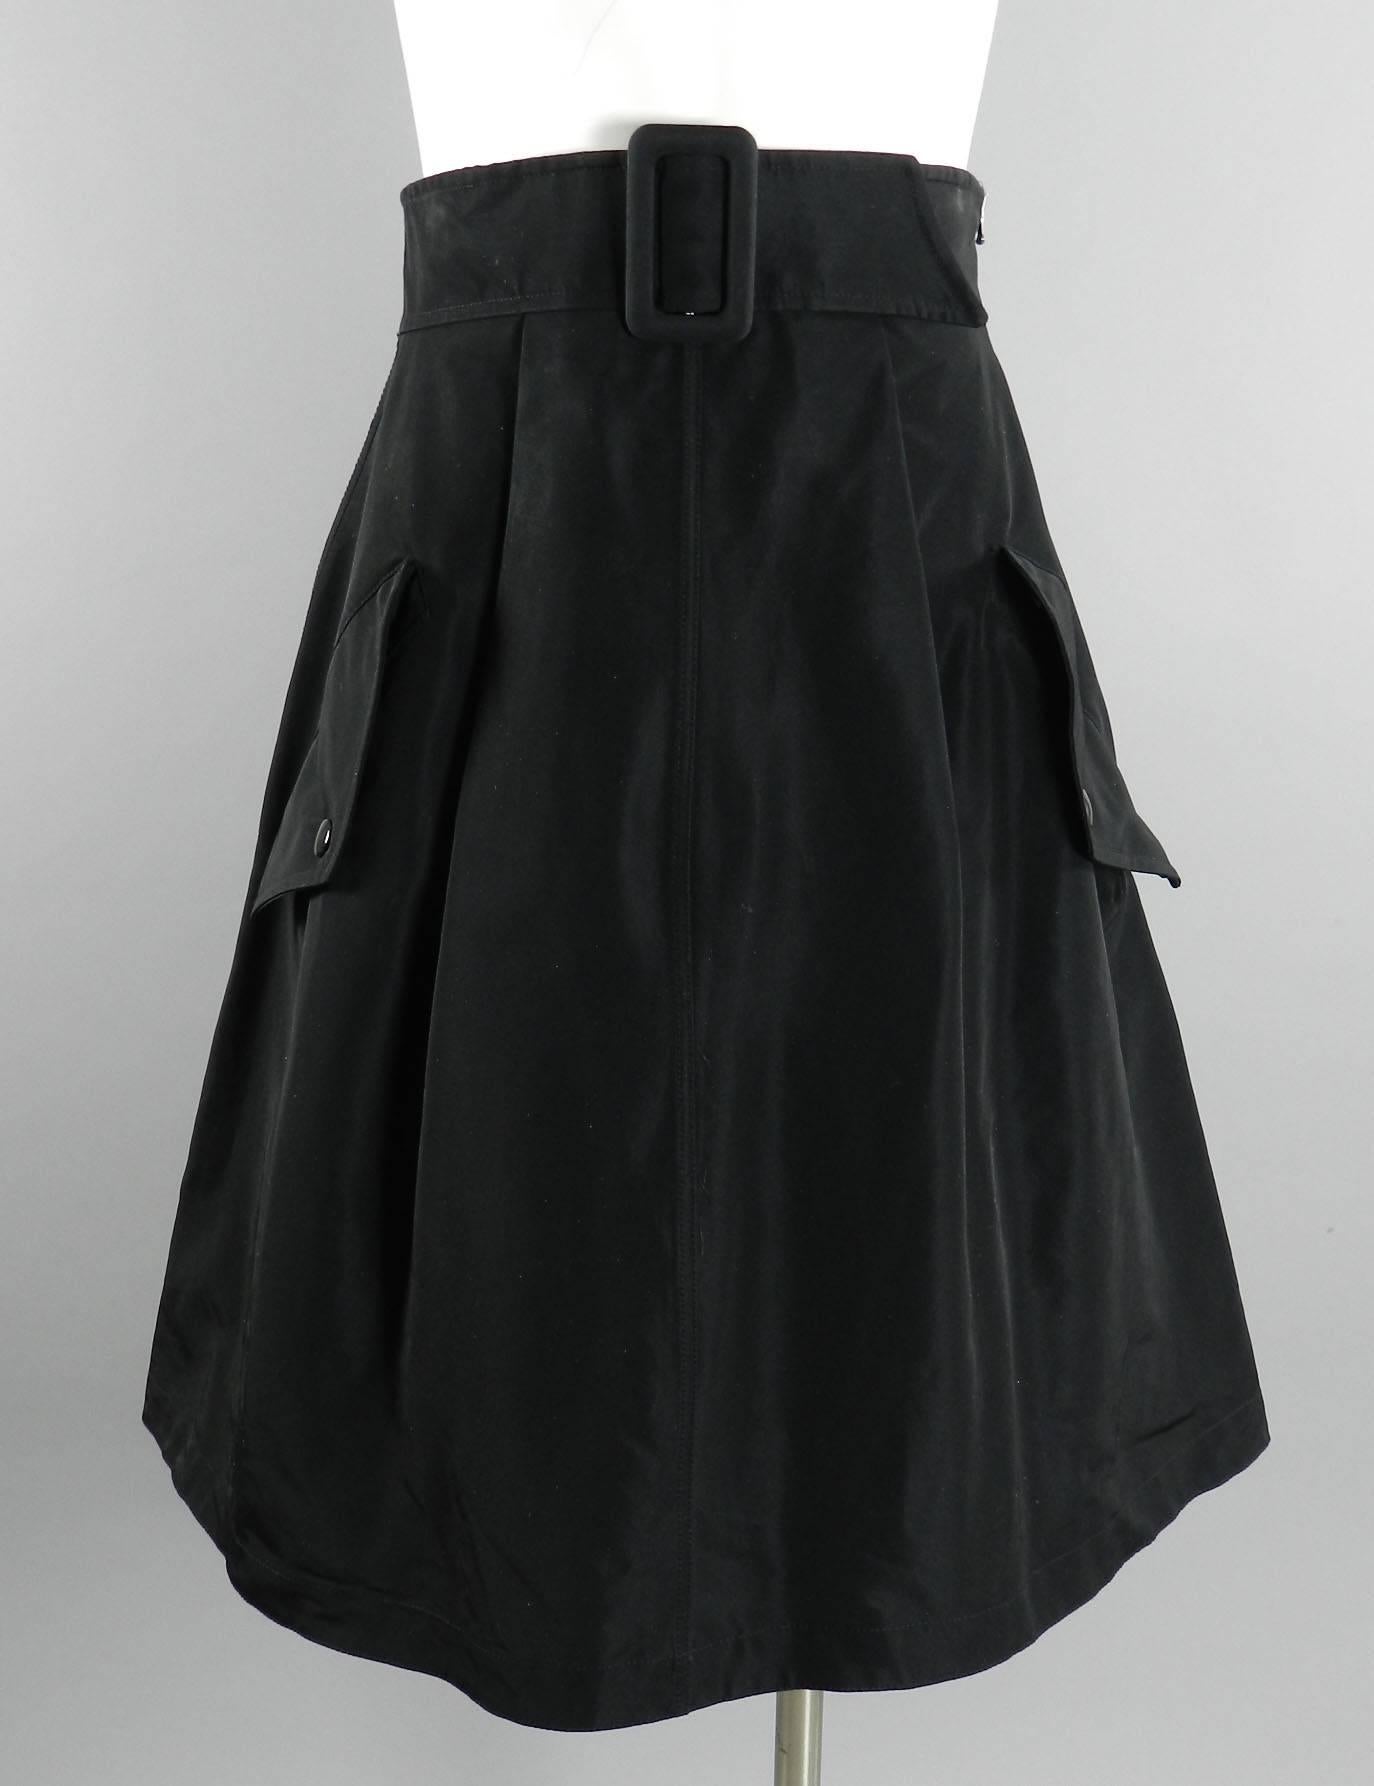 Gaultier Femme Black Skirt 5